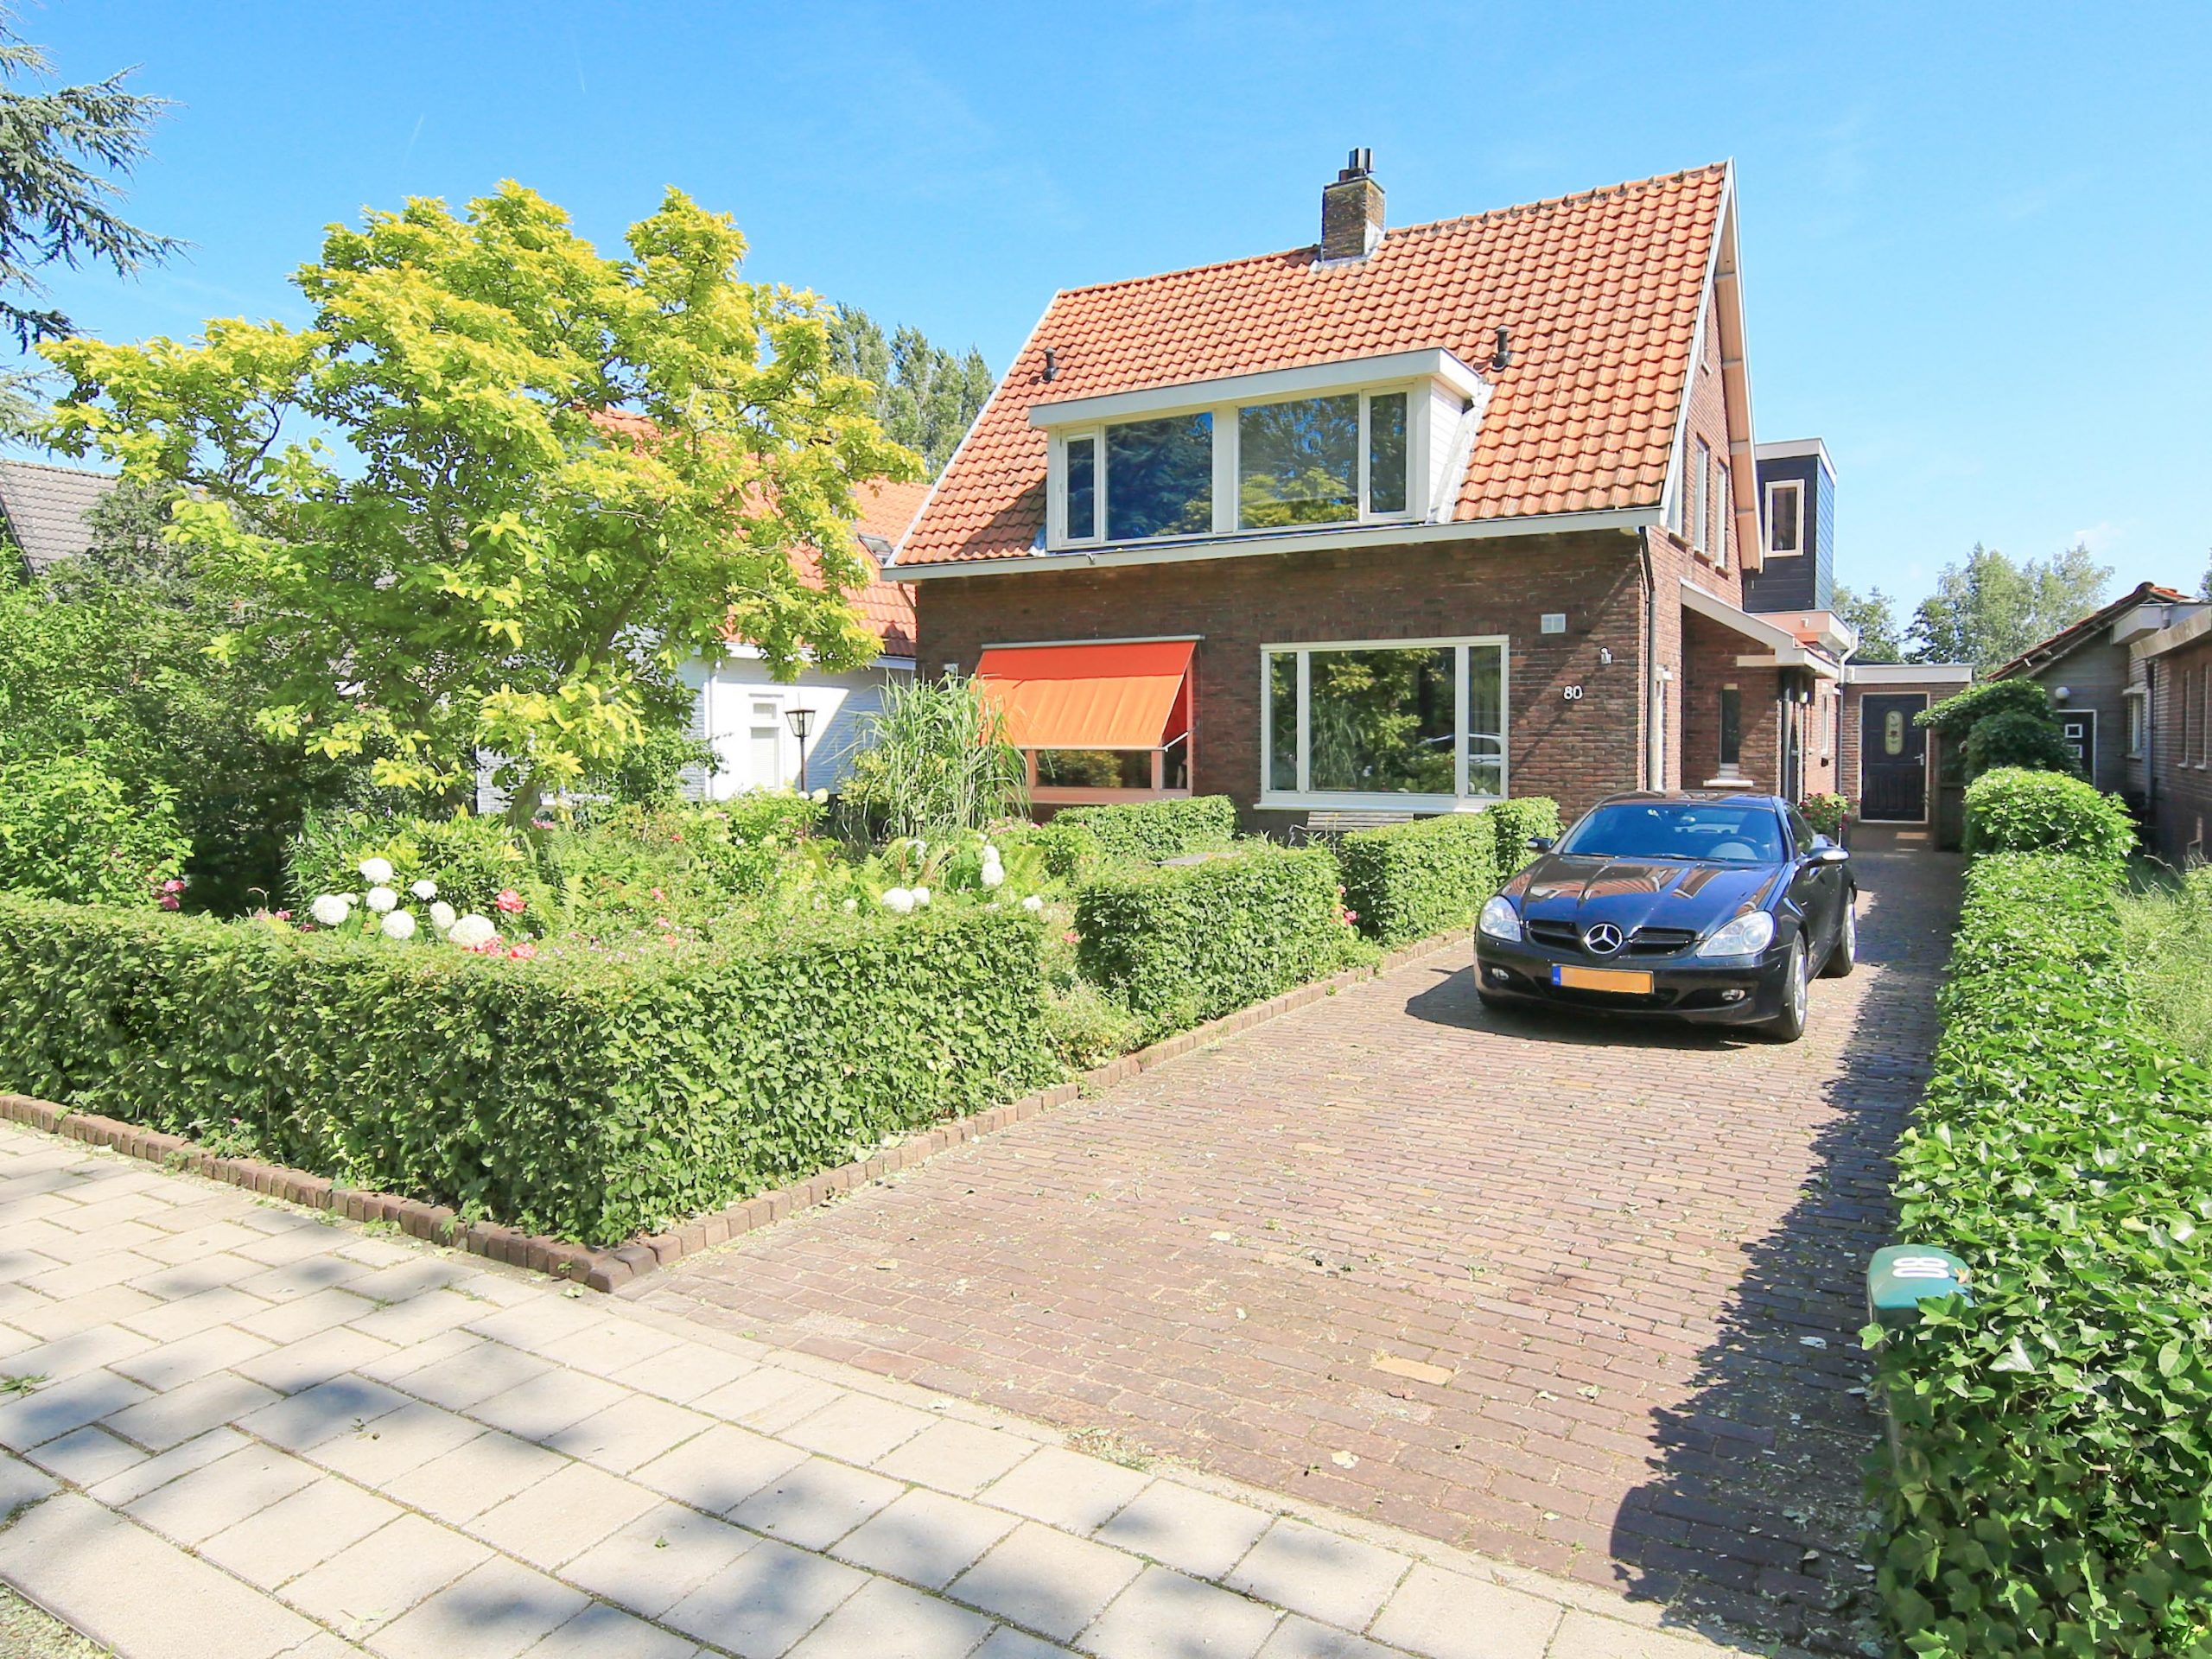 Landelijk wonen dichtbij @Amsterdam @Lijnden Hoofdweg 80 in deze goed verbouwde karakteristieke 2/1 kap met megatuin